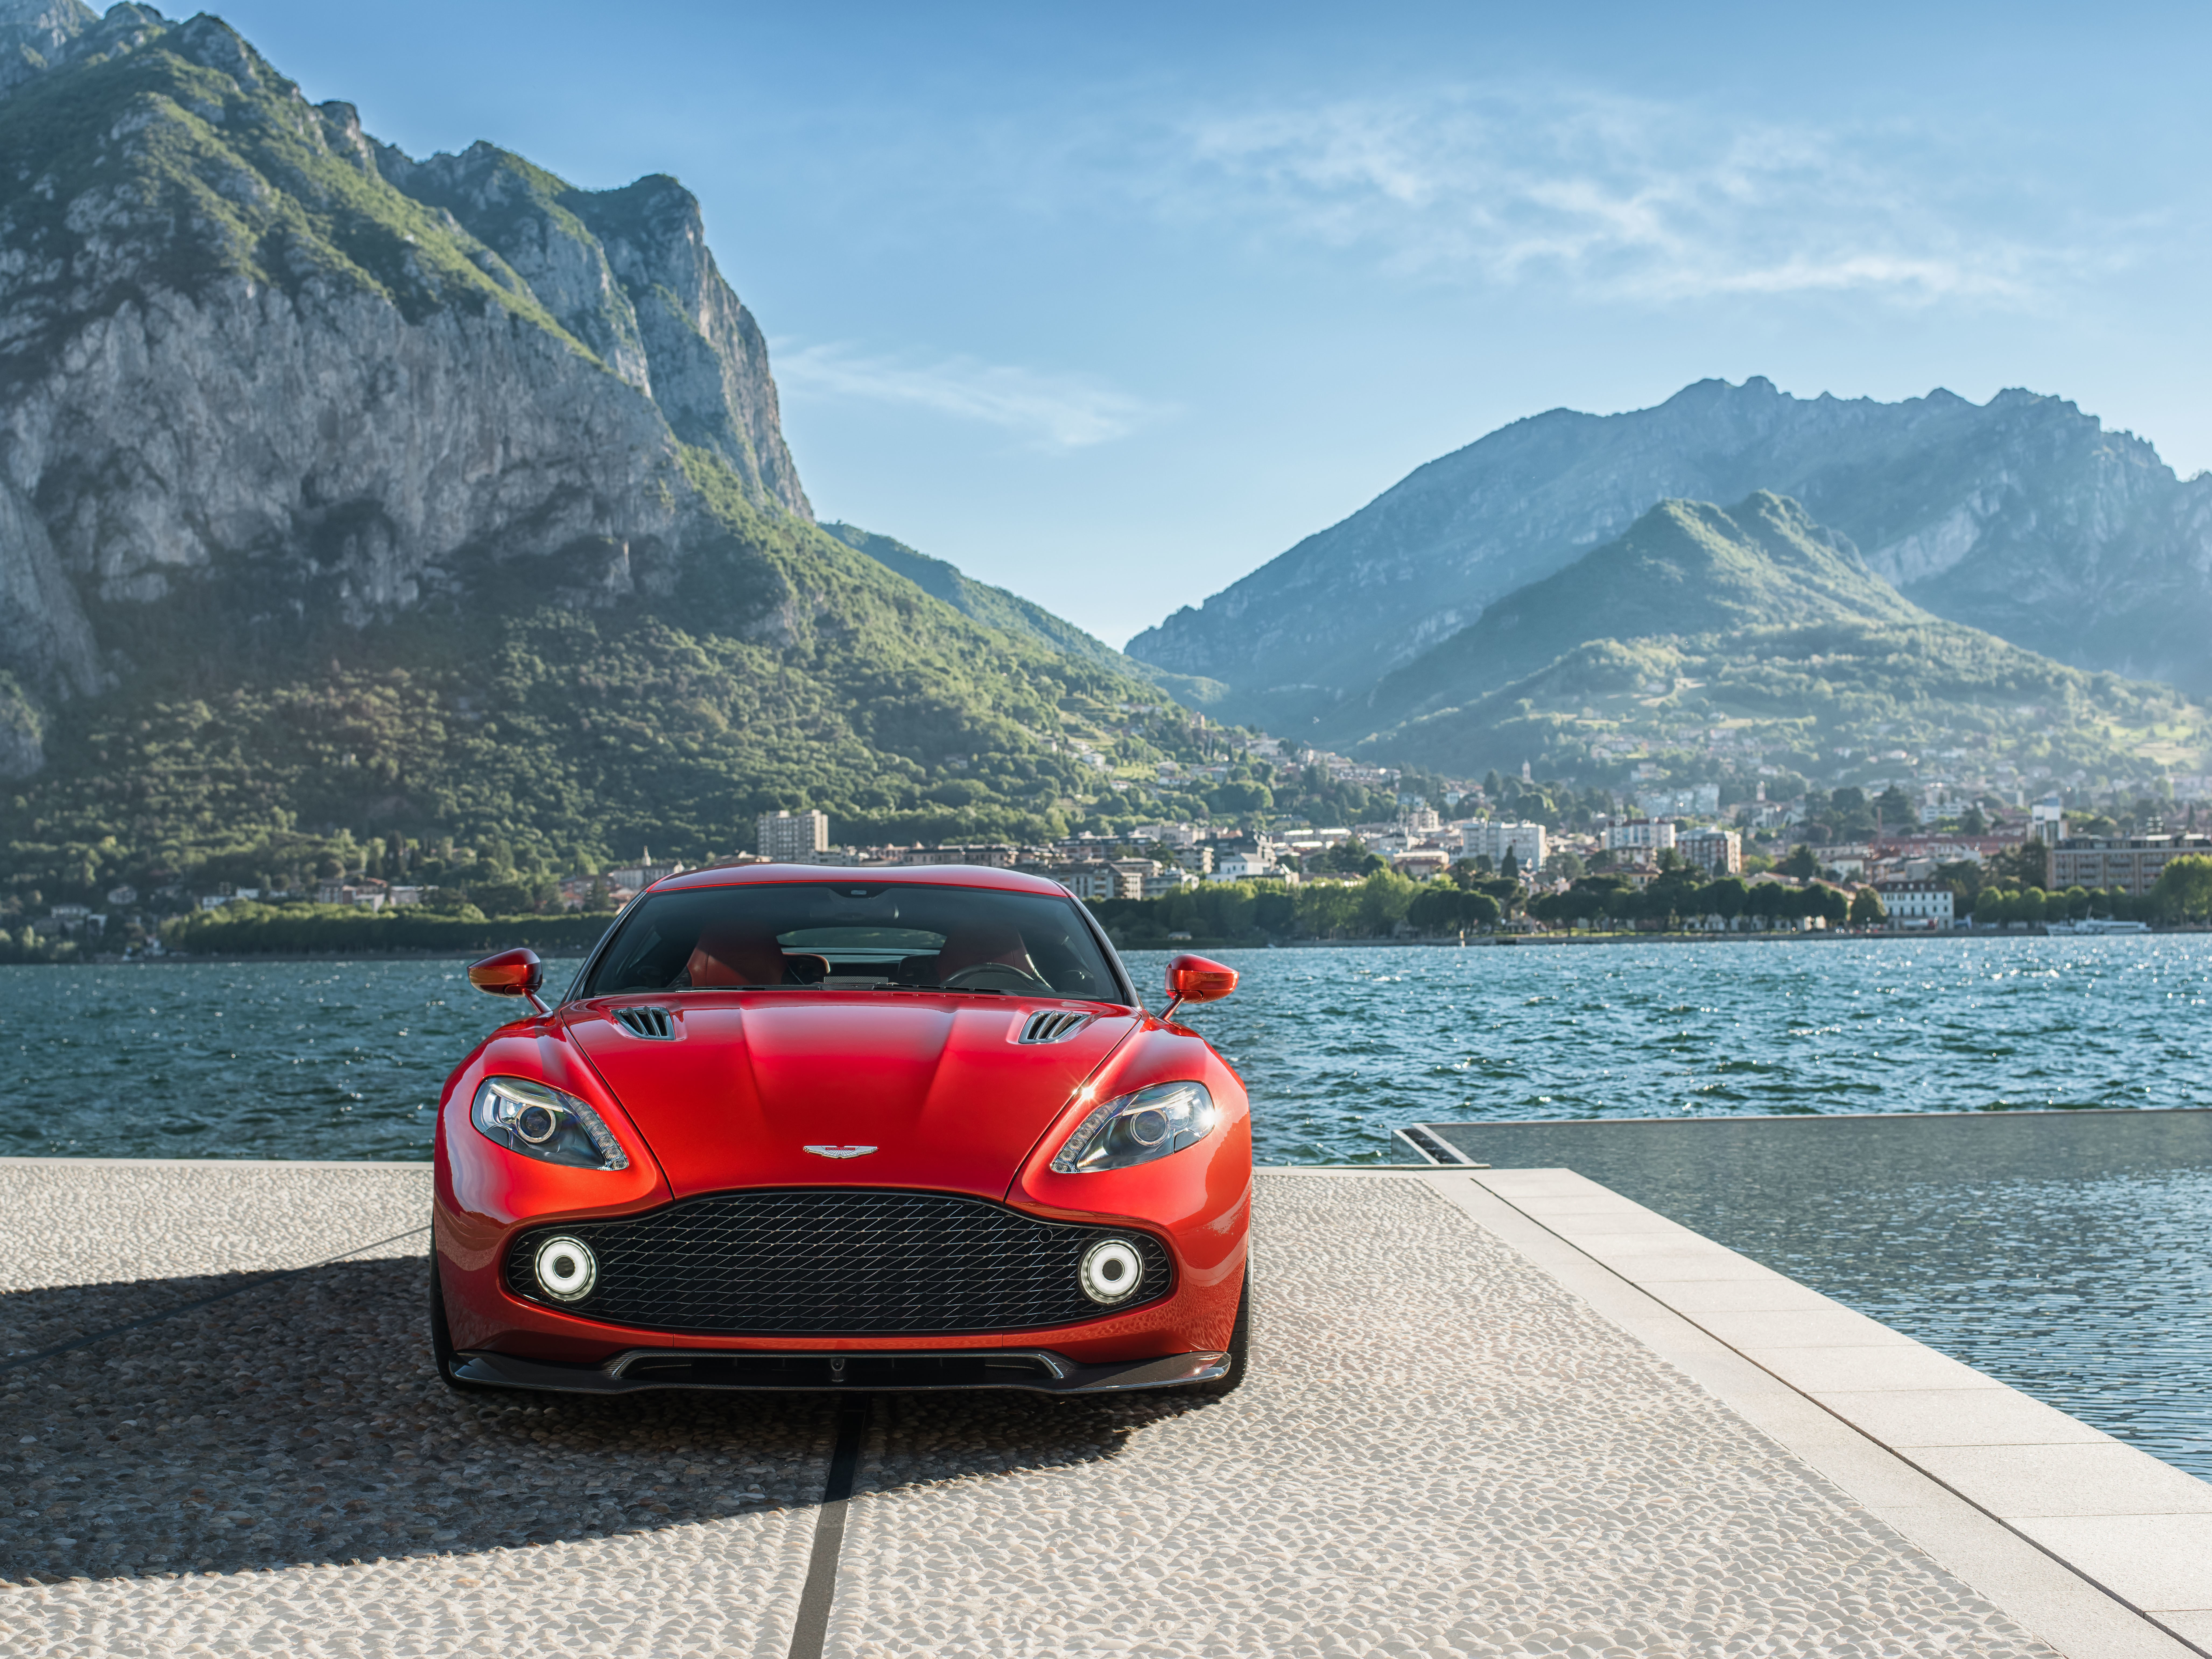 Aston Martin Vanquish Zagato Coupe Red Car Sport Car 8219x6164